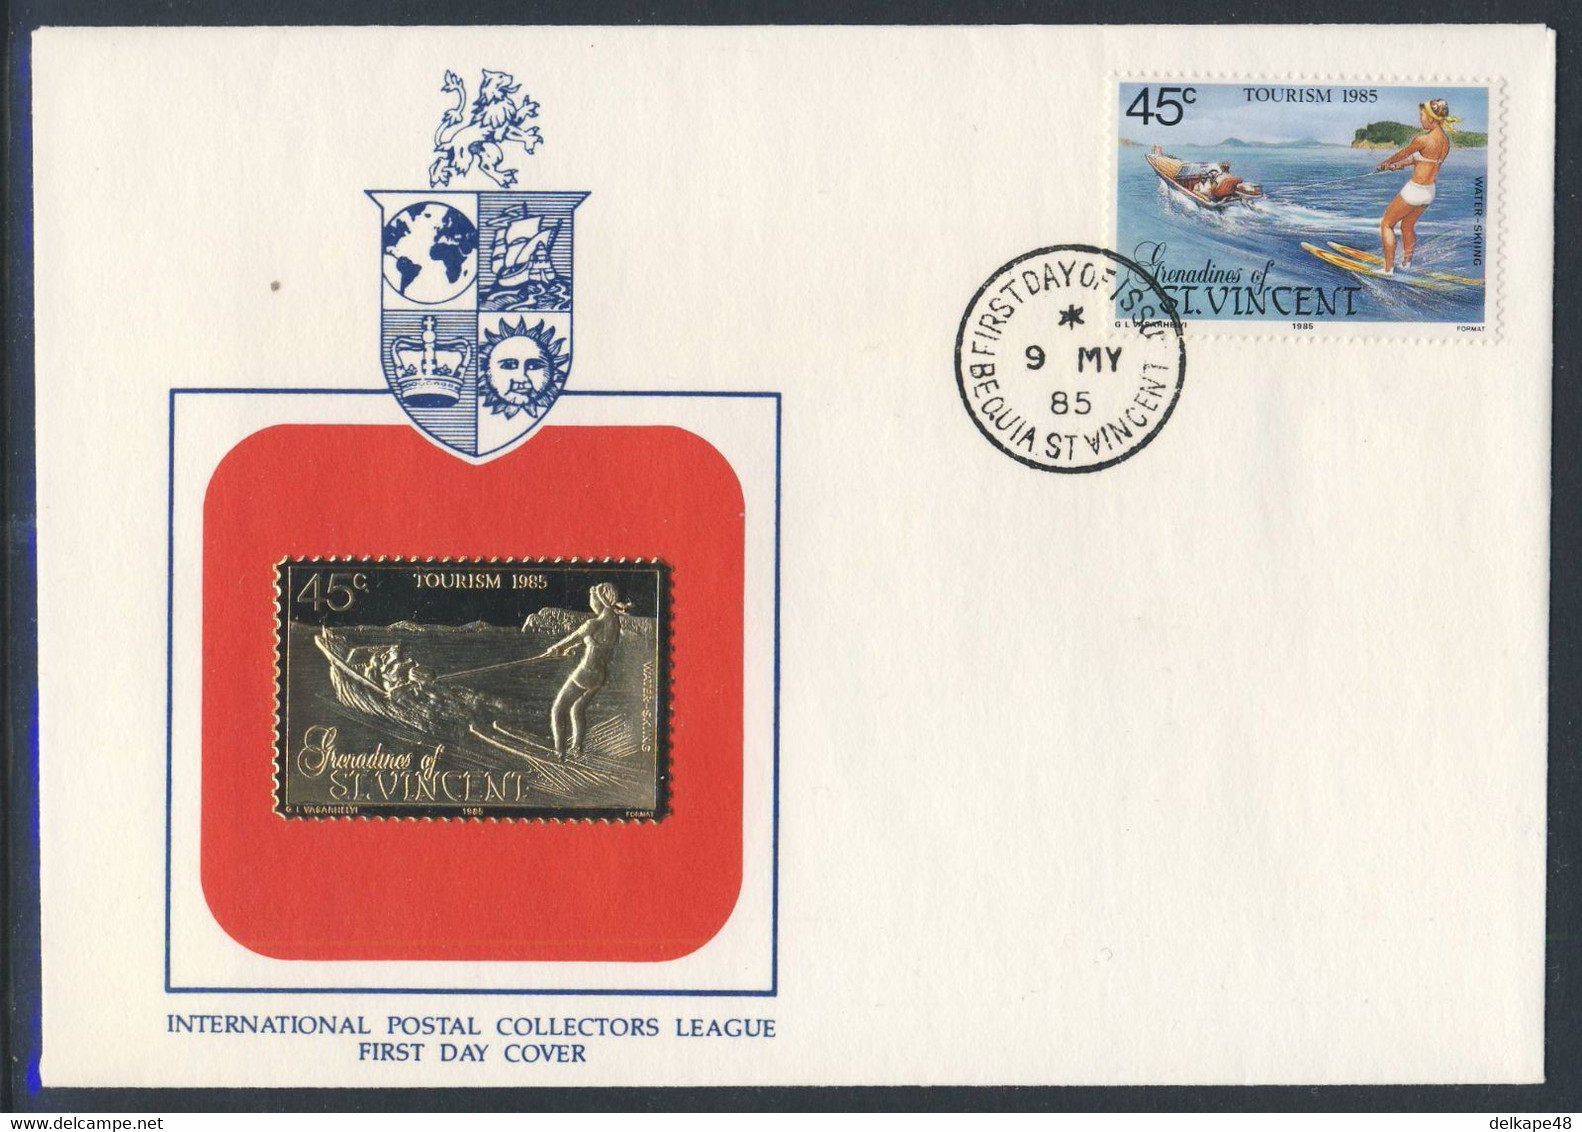 Grenadines Of St. Vincent 1985 FDC Mi 398 SG 387 - Golden Stamp - Water-skiing / Wasserskifahren / - Sci Nautico